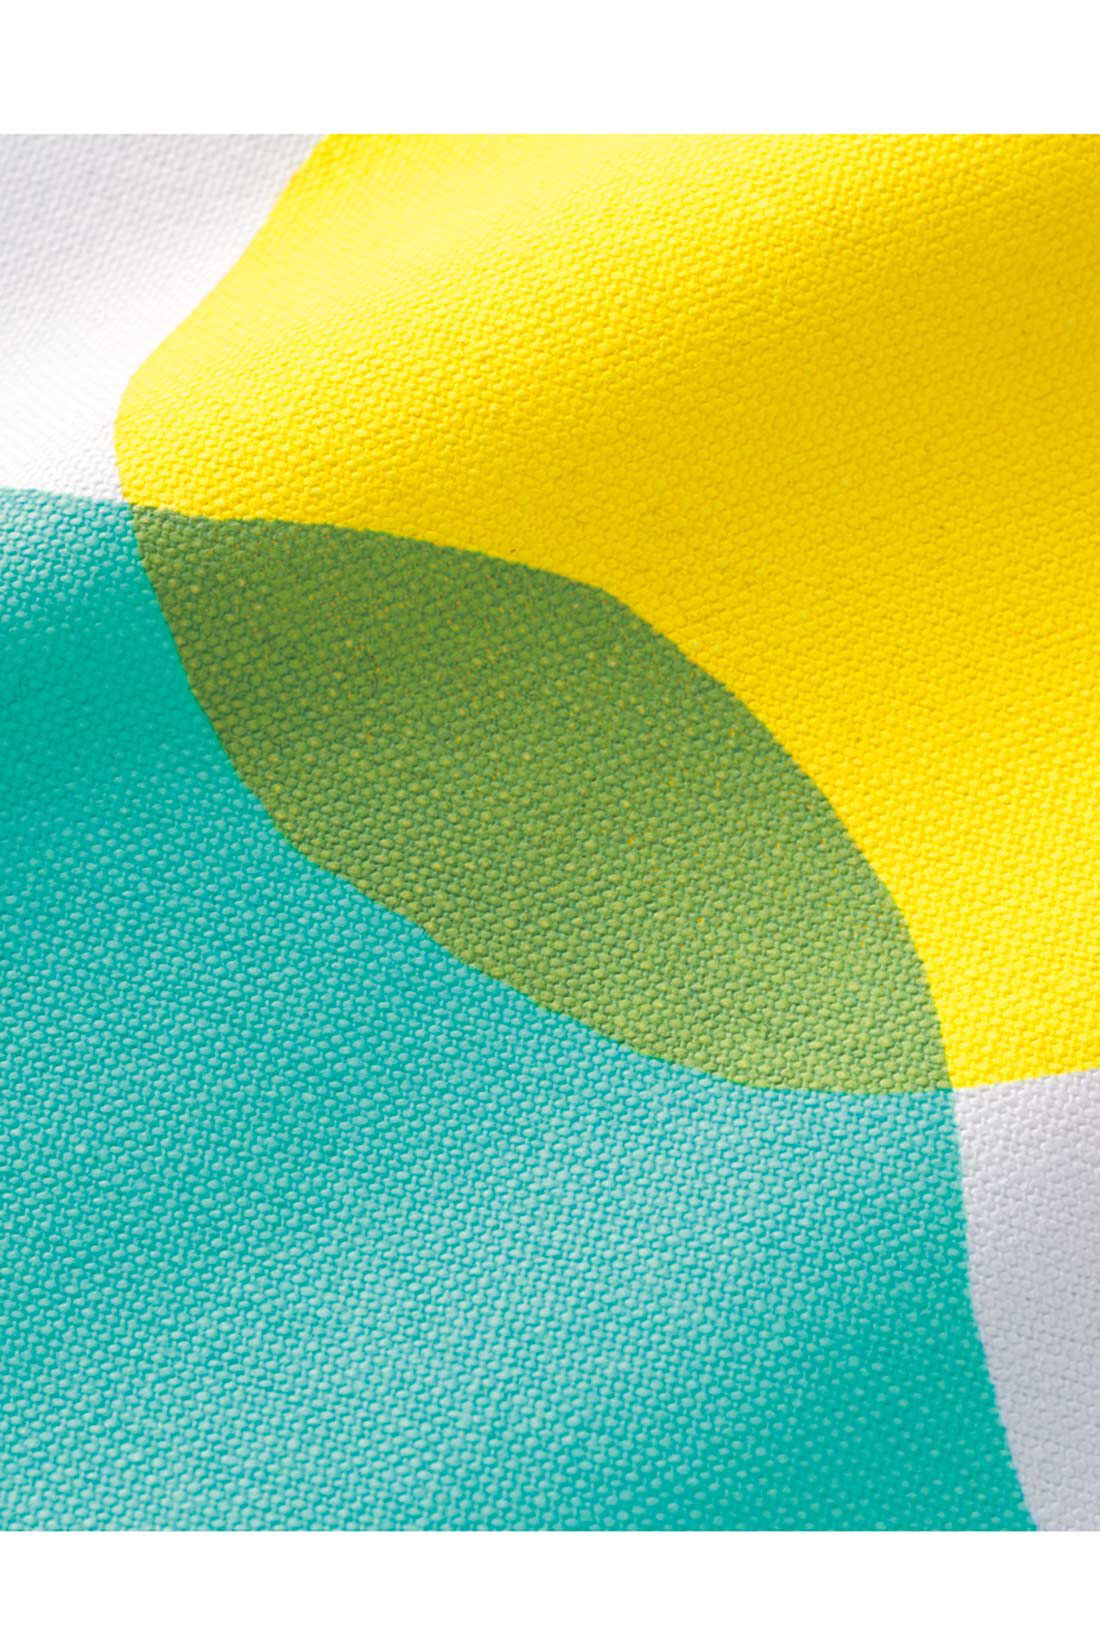 フェリシモコレクション|ユニカラート　11号帆布の斜めがけワンショルダーバッグ〈月夜の晩に…〉|2版のプリントが重なることで、微妙な色合いや、薄い和紙のようなムラが生まれます。 一点一点異なるオンリーワンのカラーをお楽しみください。